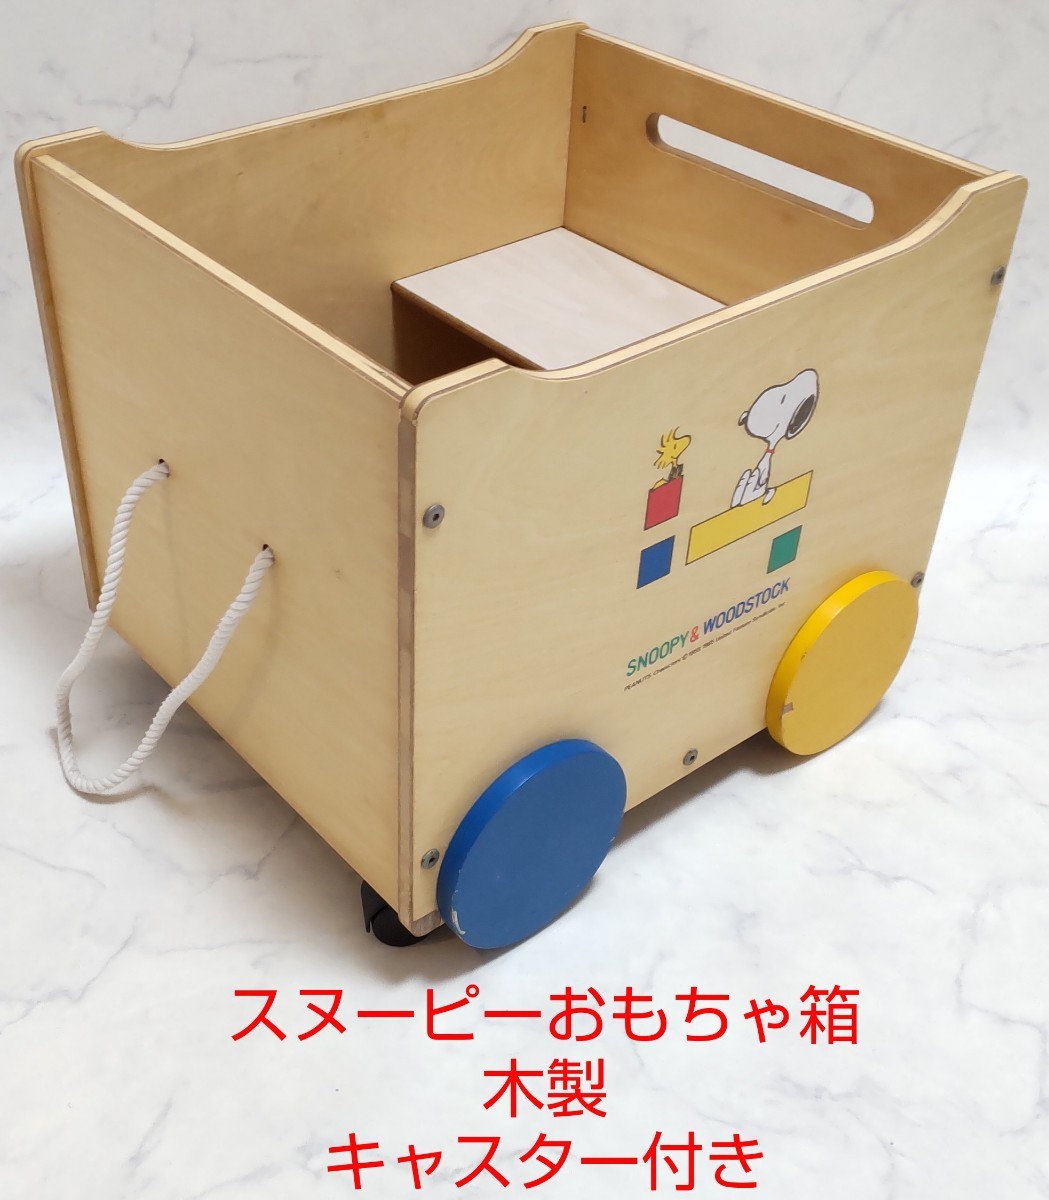 スヌーピー おもちゃ箱 木製 キャスター付 レトロ 乗用可能 小物入れ #エ_画像1